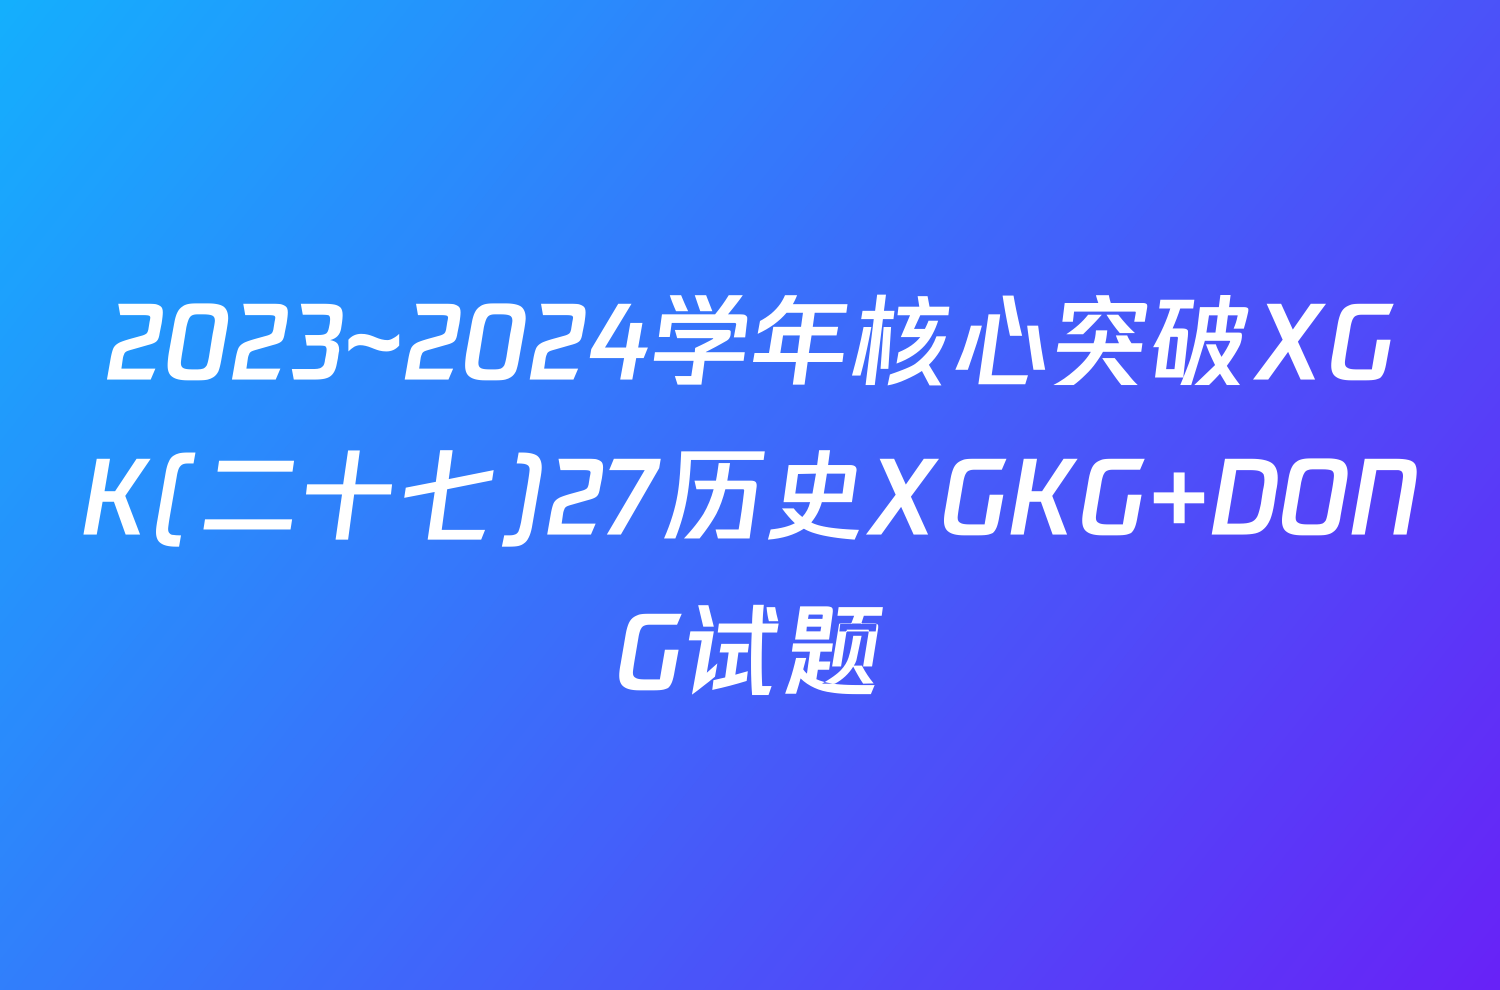 2023~2024学年核心突破XGK(二十七)27历史XGKG DONG试题